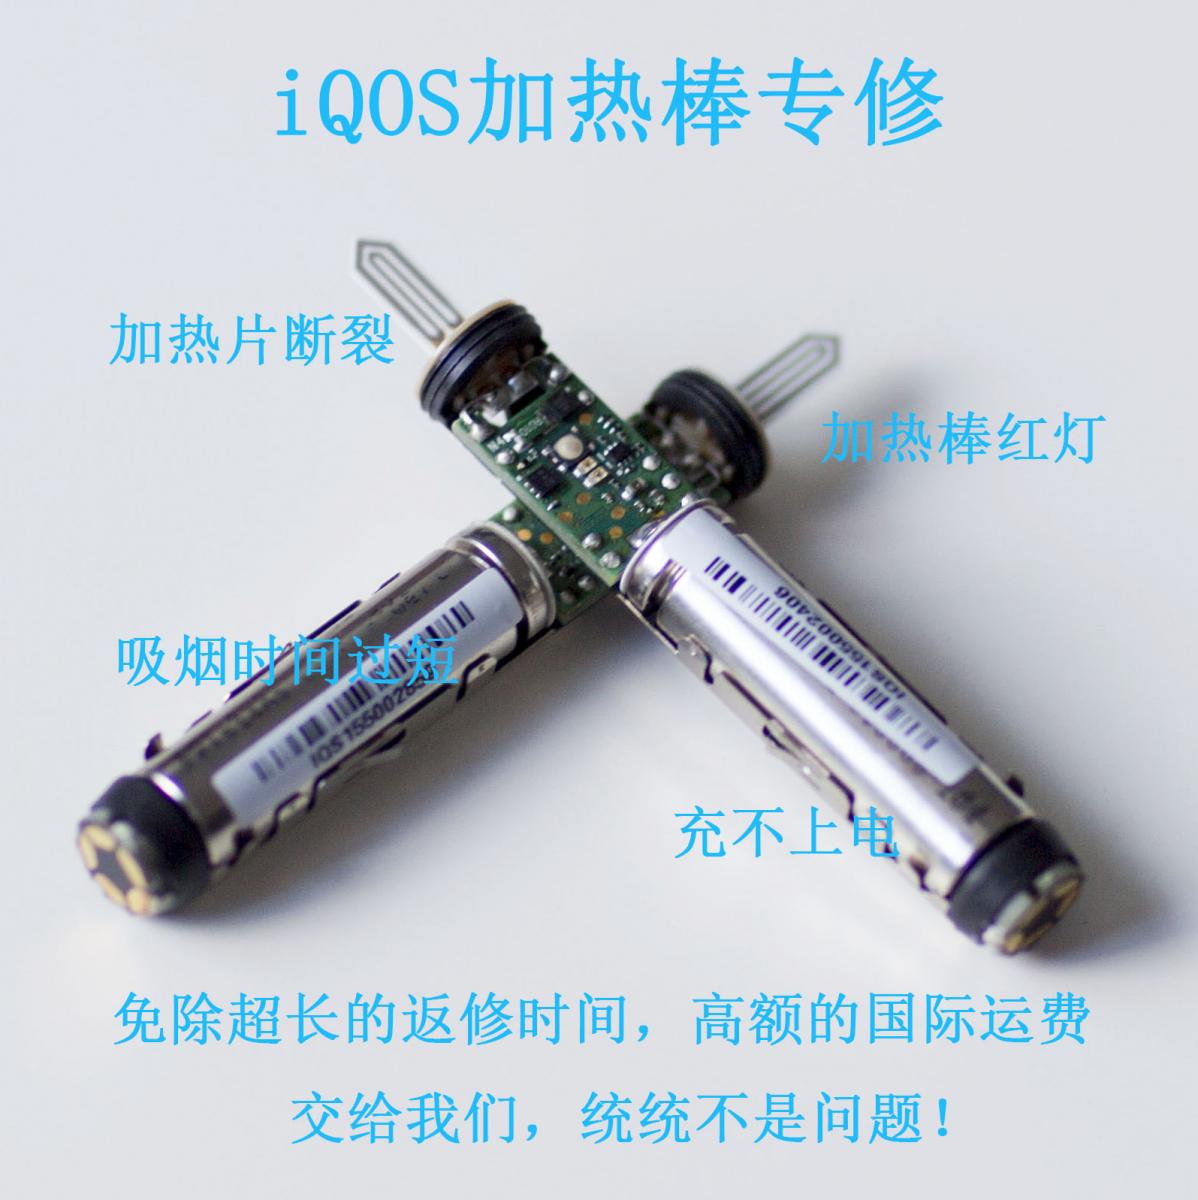 上海本地 普陀区 iqos IQOS 电子烟枪 电子烟 烟杆 红灯 加热片 进水 不充电维修